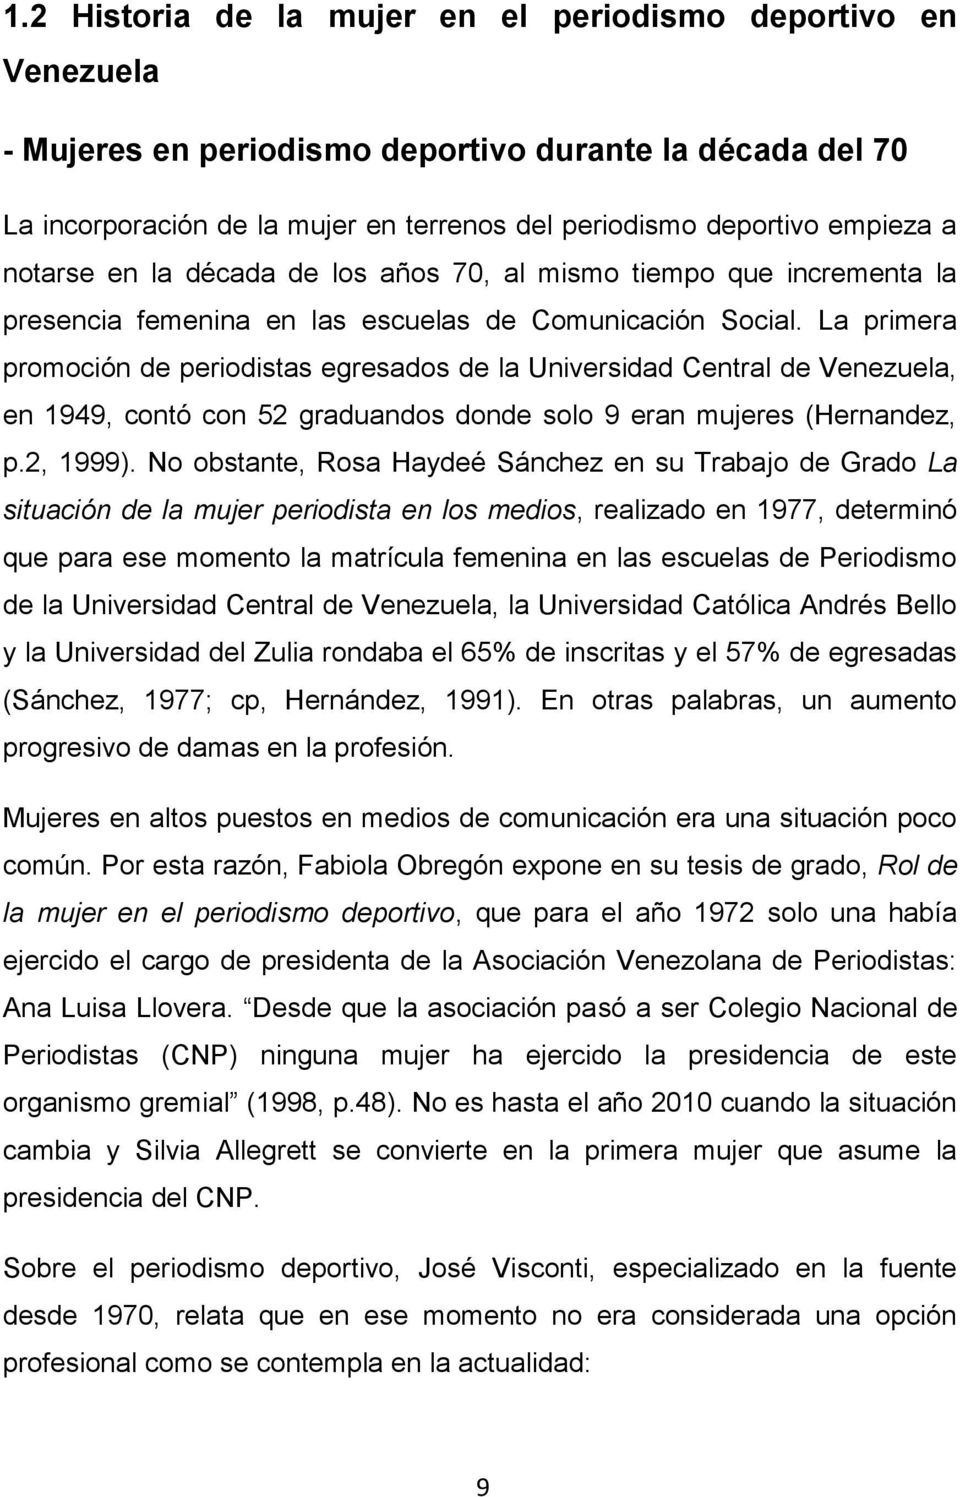 La primera promoción de periodistas egresados de la Universidad Central de Venezuela, en 1949, contó con 52 graduandos donde solo 9 eran mujeres (Hernandez, p.2, 1999).